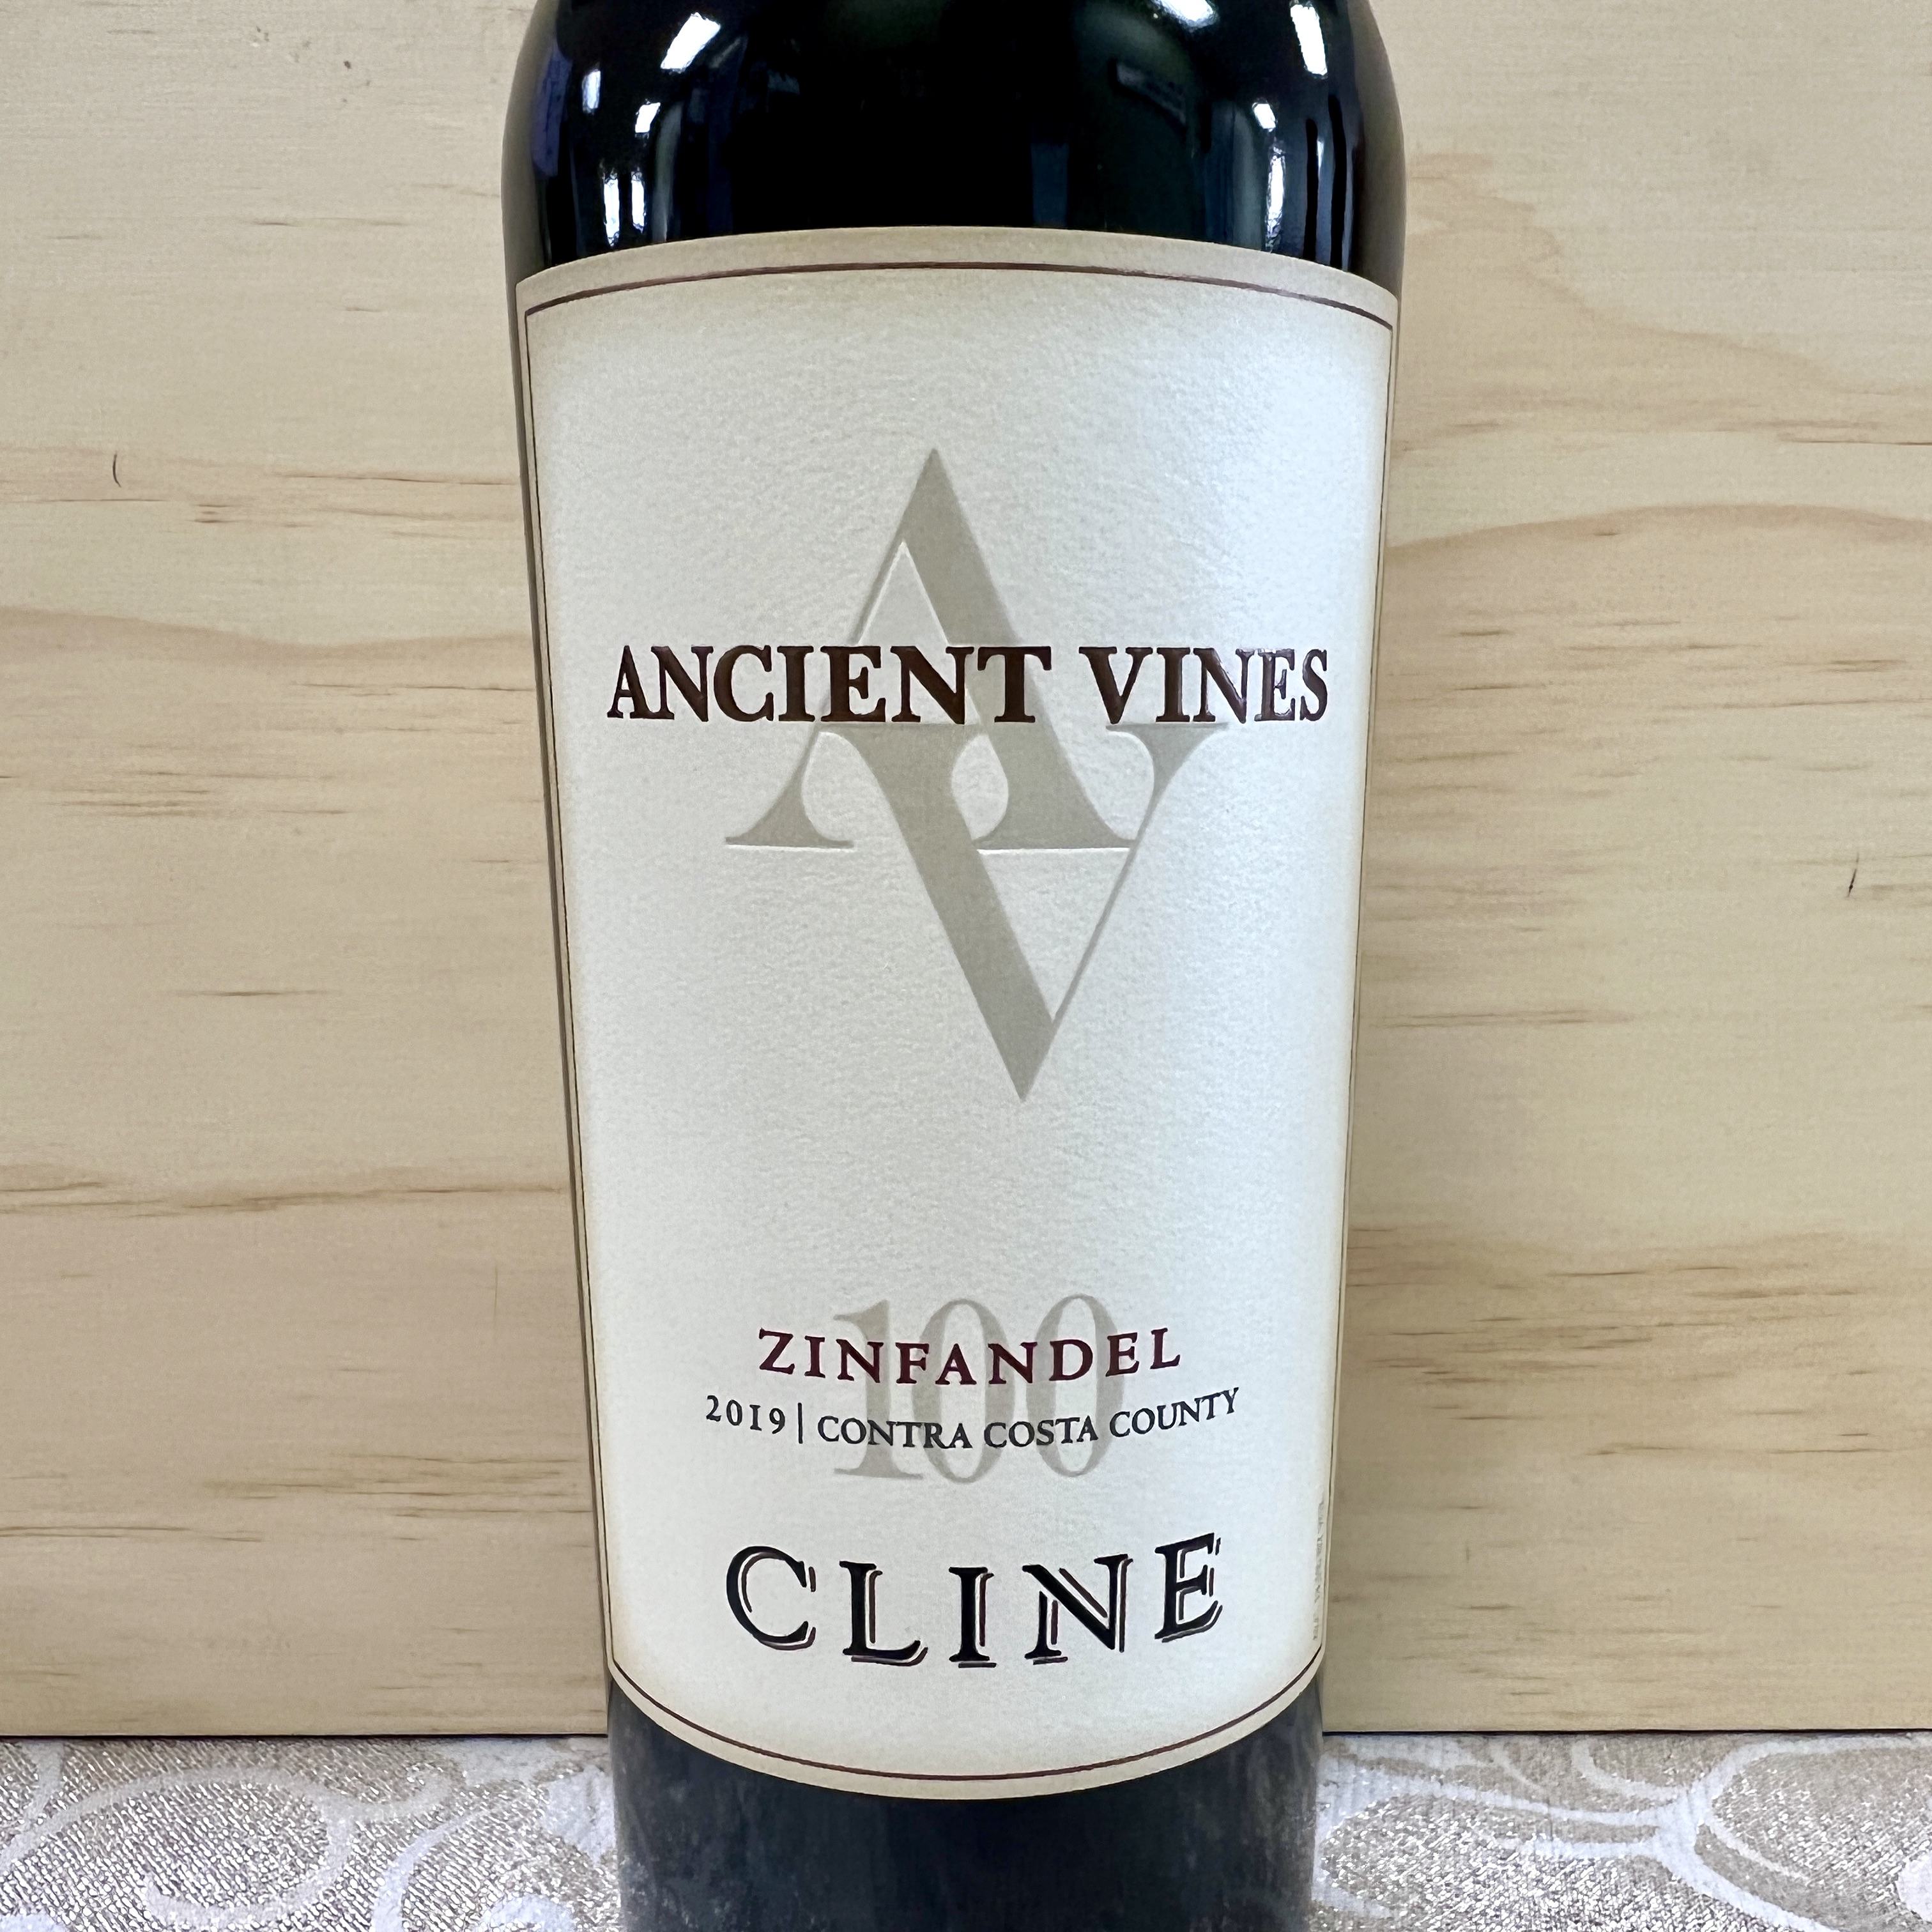 Cline Ancient Vines Zinfandel 2019 Contra Costa